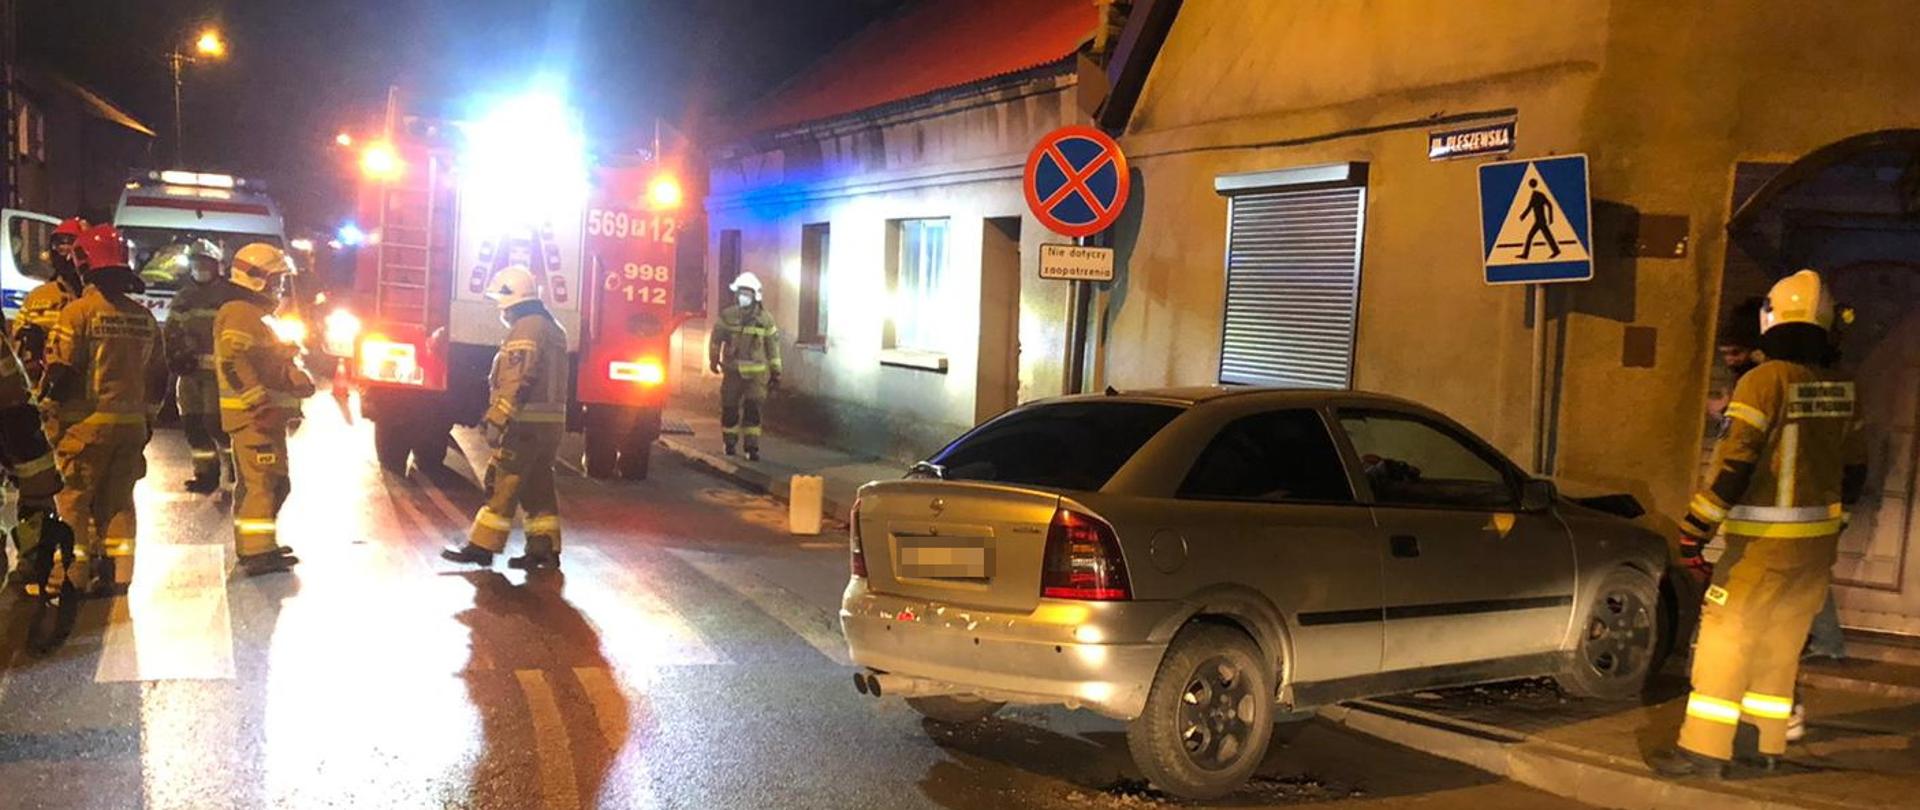 Zdjęcie przedstawia zdarzenie drogowe wieczorem, w wyniku którego samochód osobowy marki Opel wjechał na chodnik uderzając w znak drogowy i budynek. Strażacy zabezpieczają miejsce zdarzenia oraz uszkodzony samochód. 